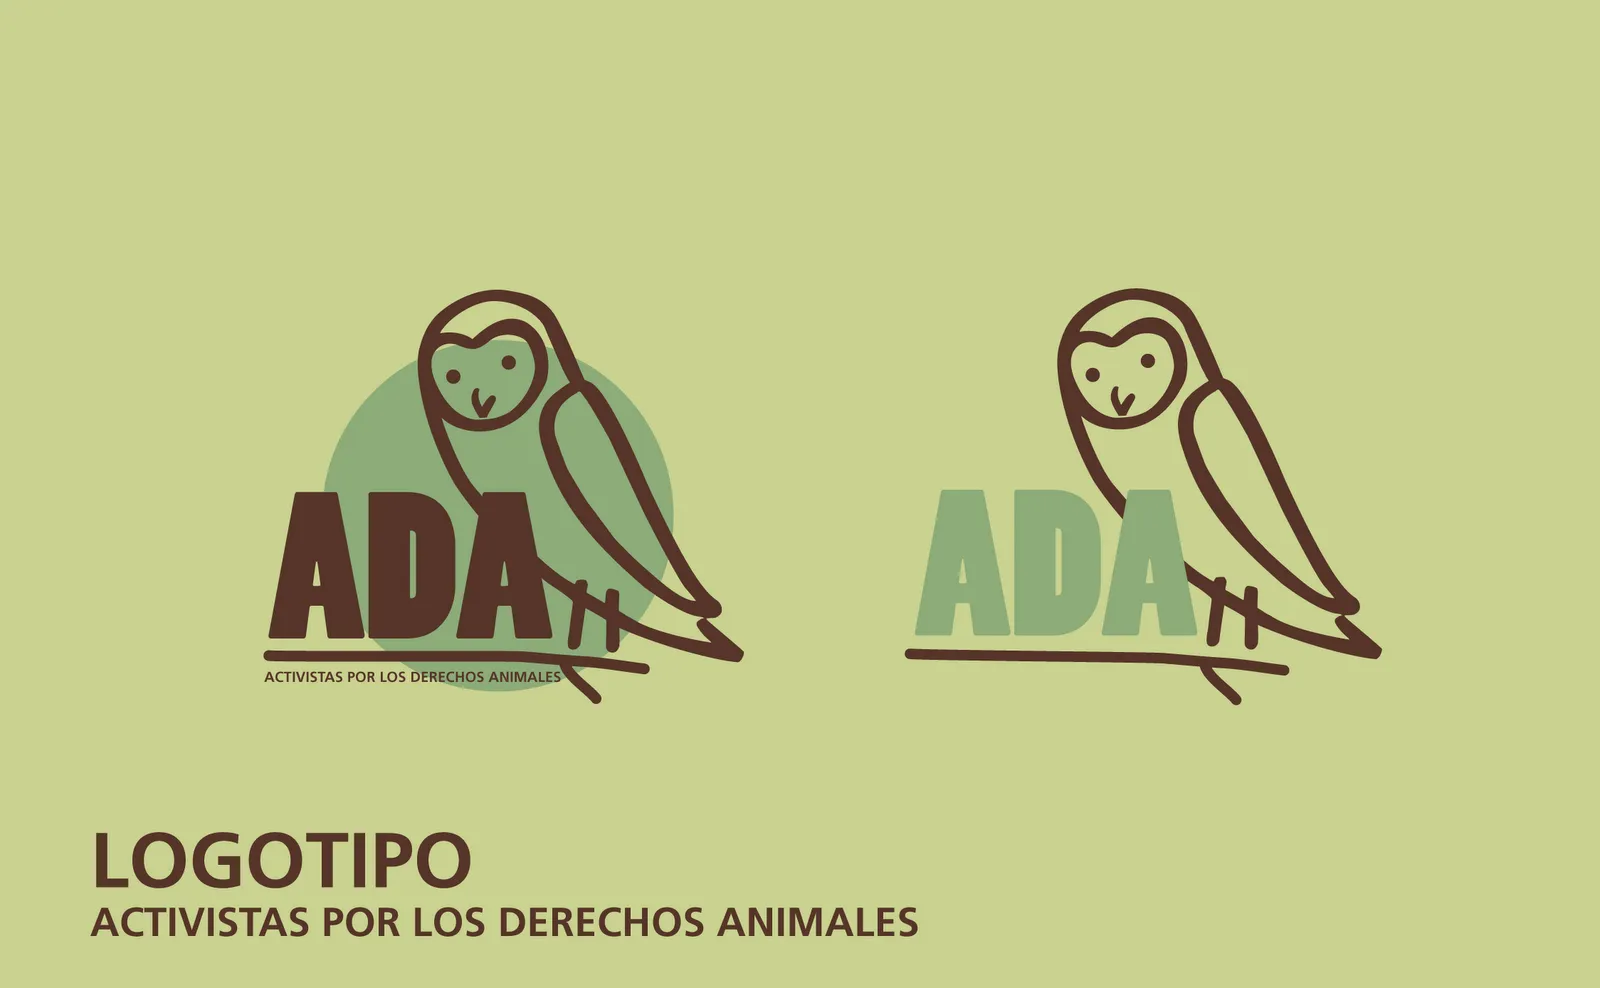  ... portfolio: Activistas por los derechos animales - Logo y papelería